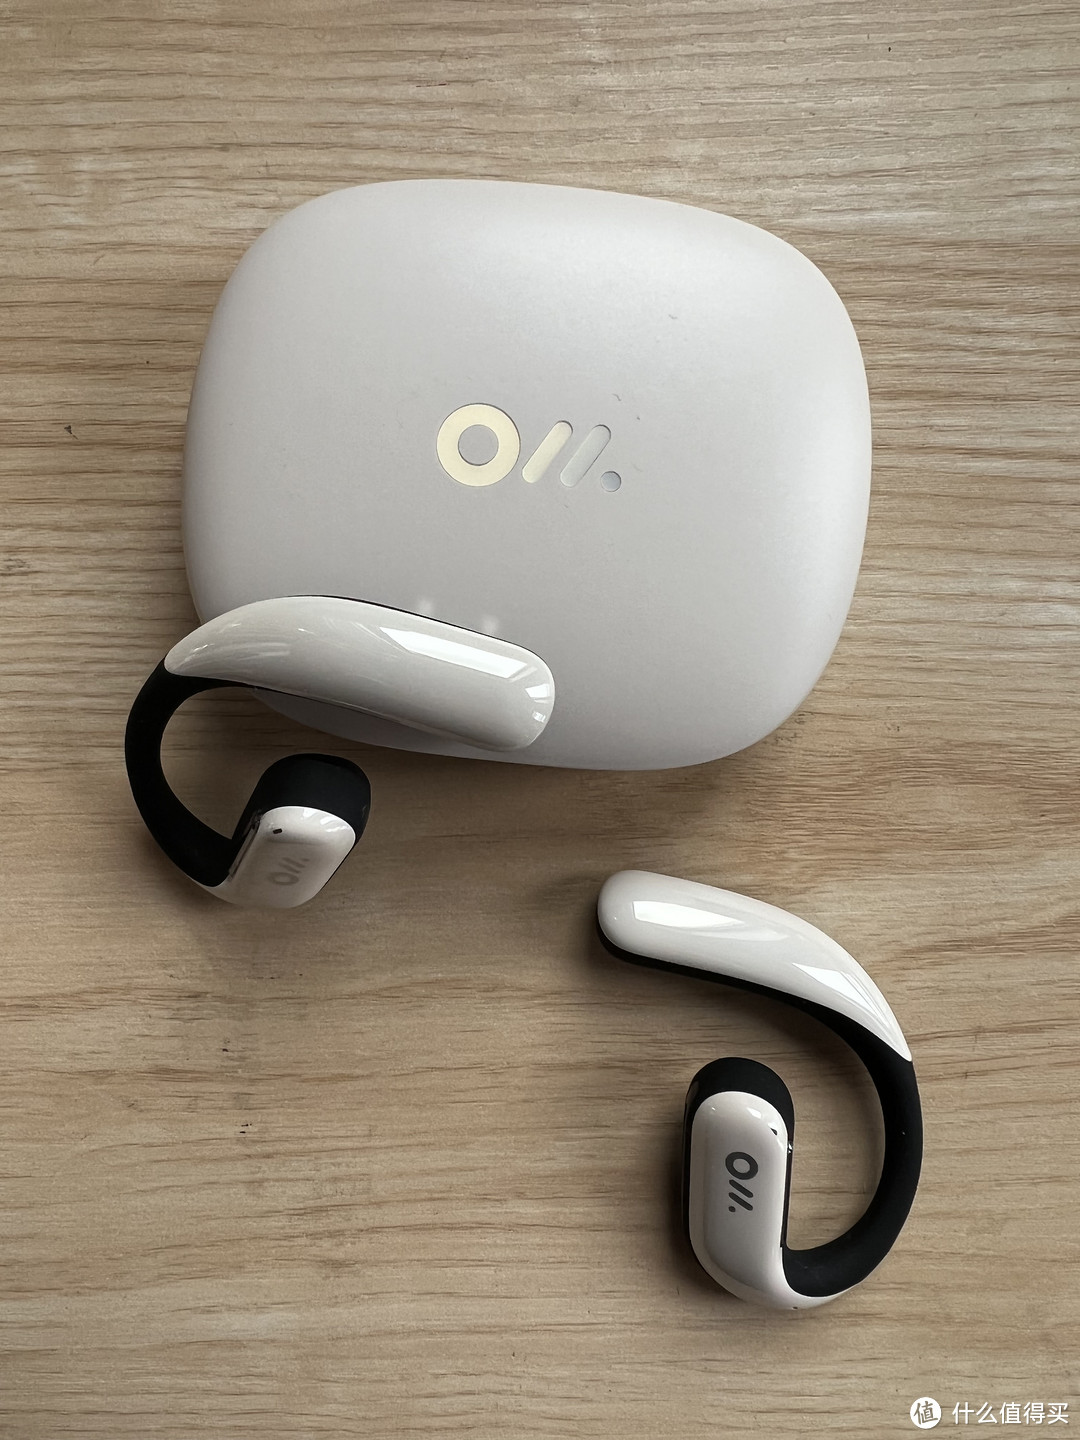 不止于听个响，OladanceOWS Pro 全开放式耳机